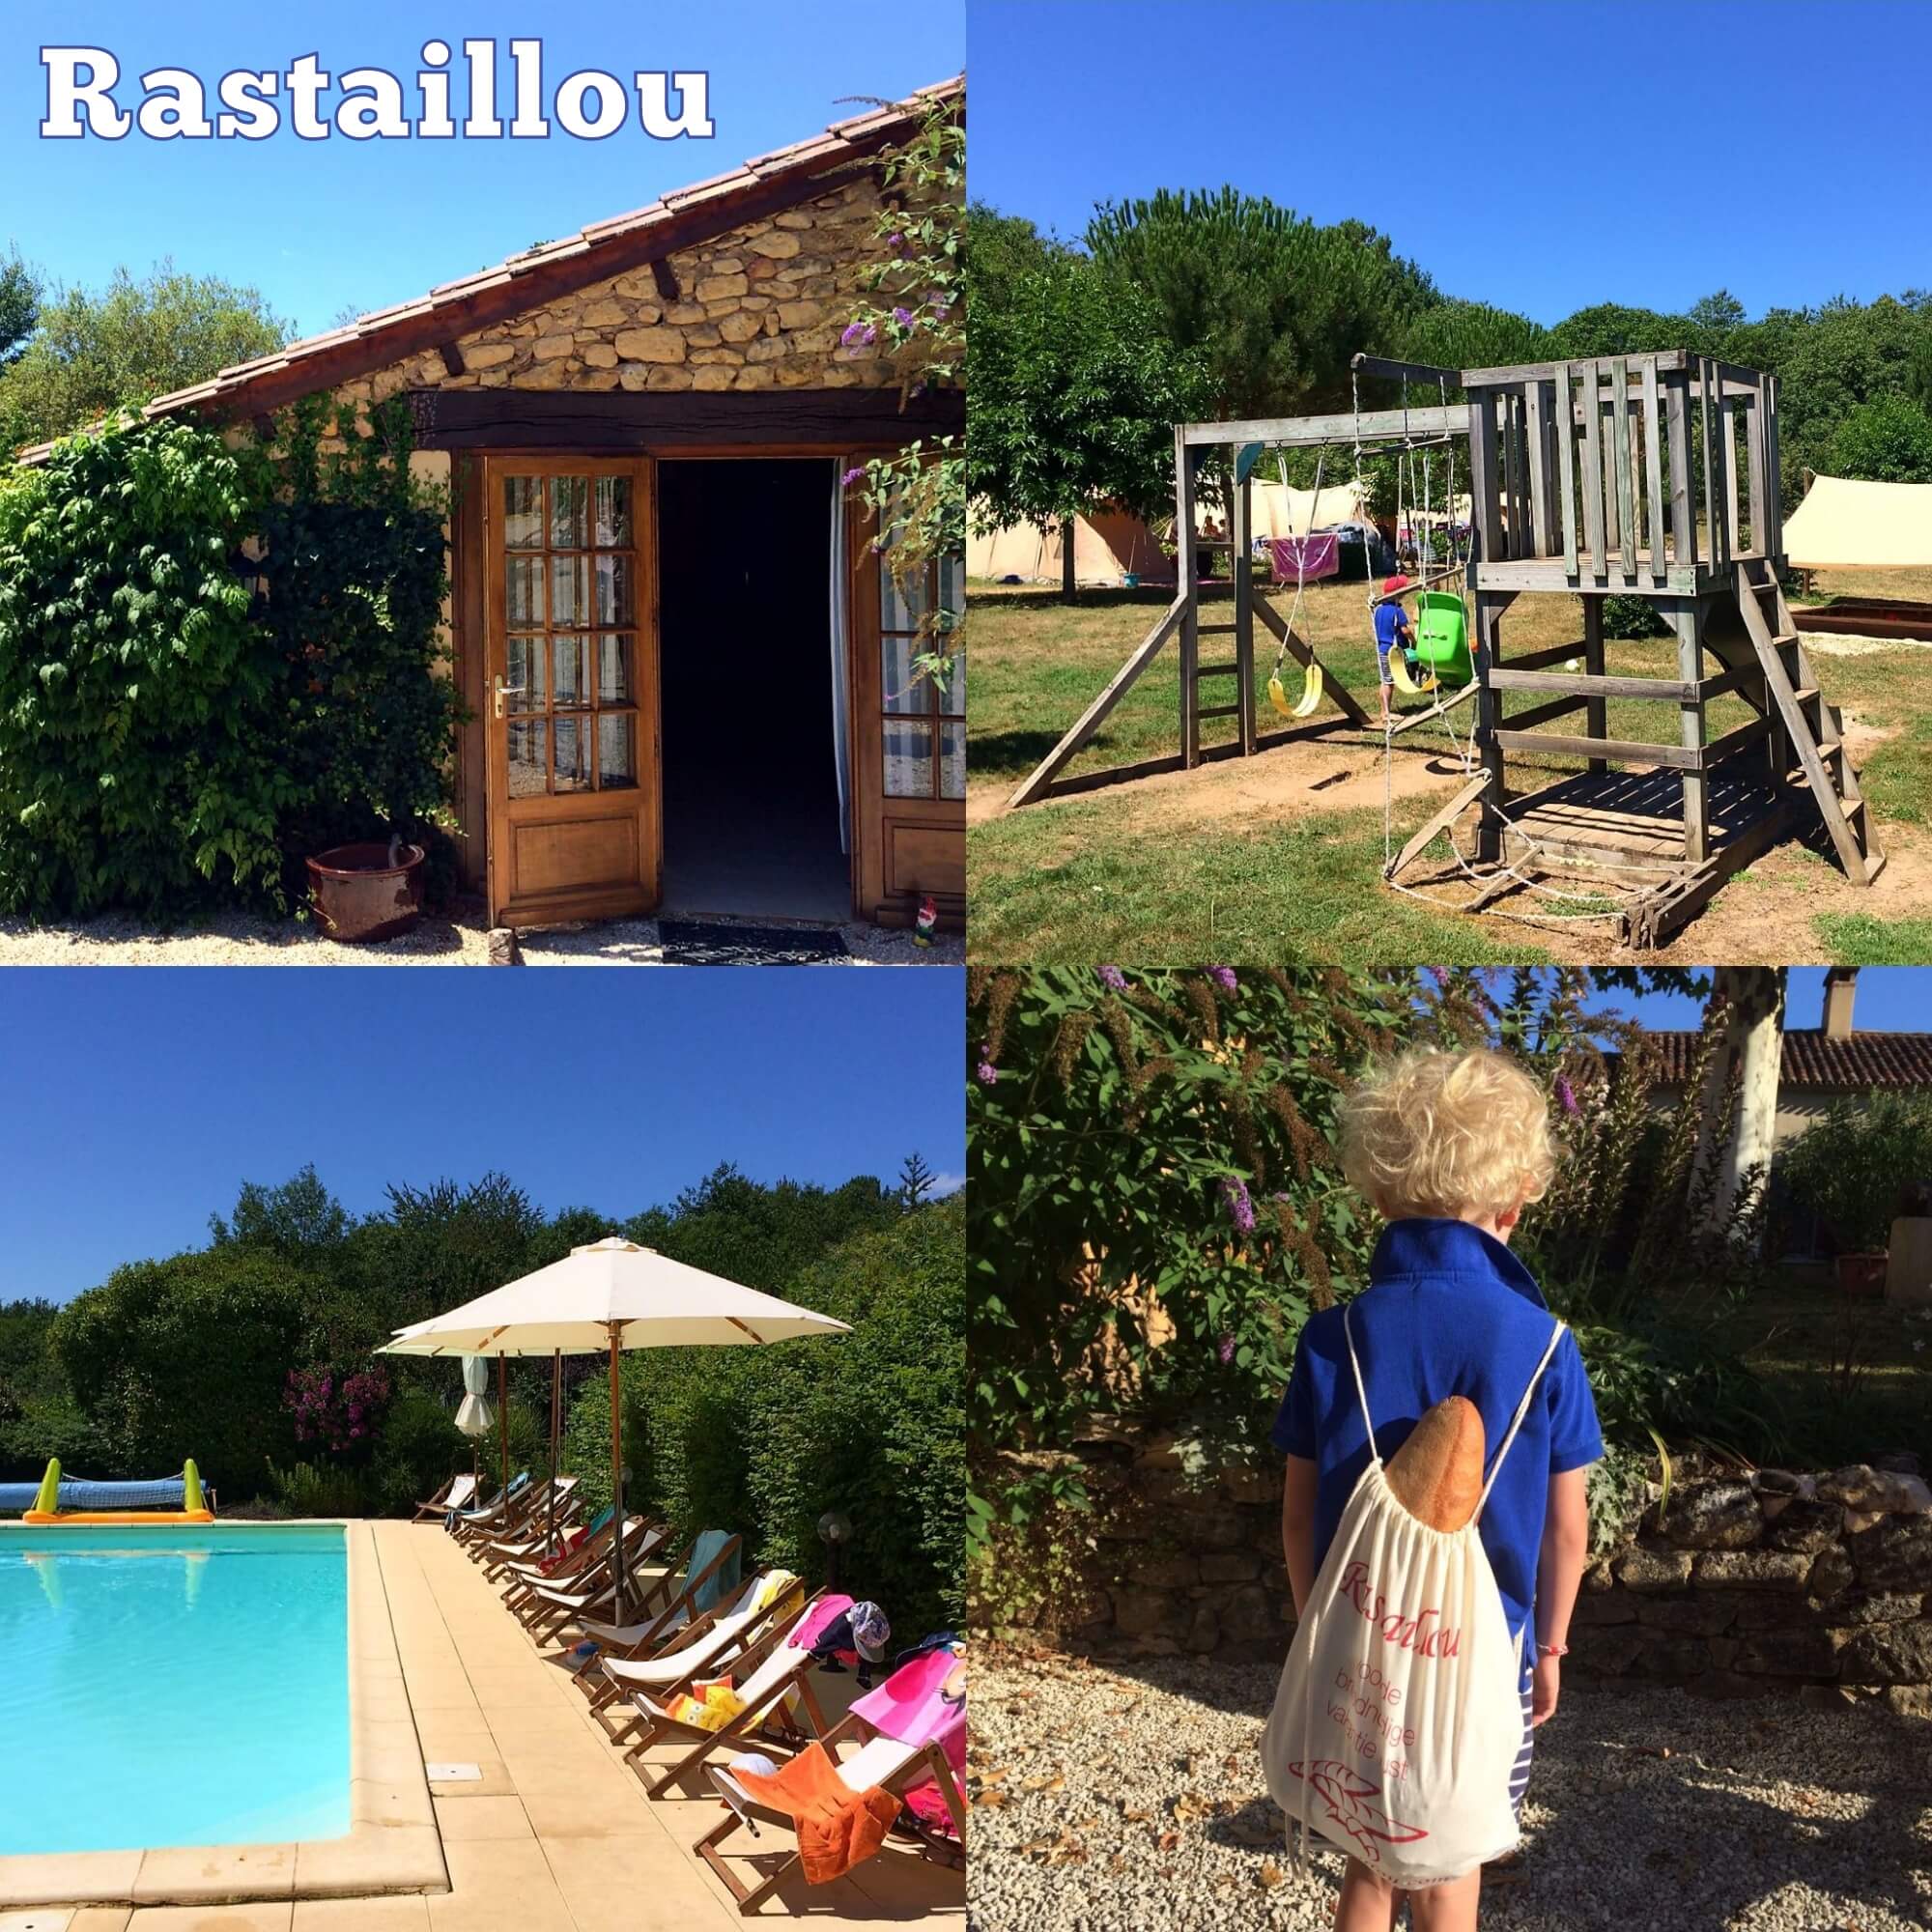 Rastaillou: een klein paradijs voor kinderen en hun ouders in de Dordogne - camping, gîtes, gastenkamers, huurtenten, table d'hôtes Perigord Frankrijk